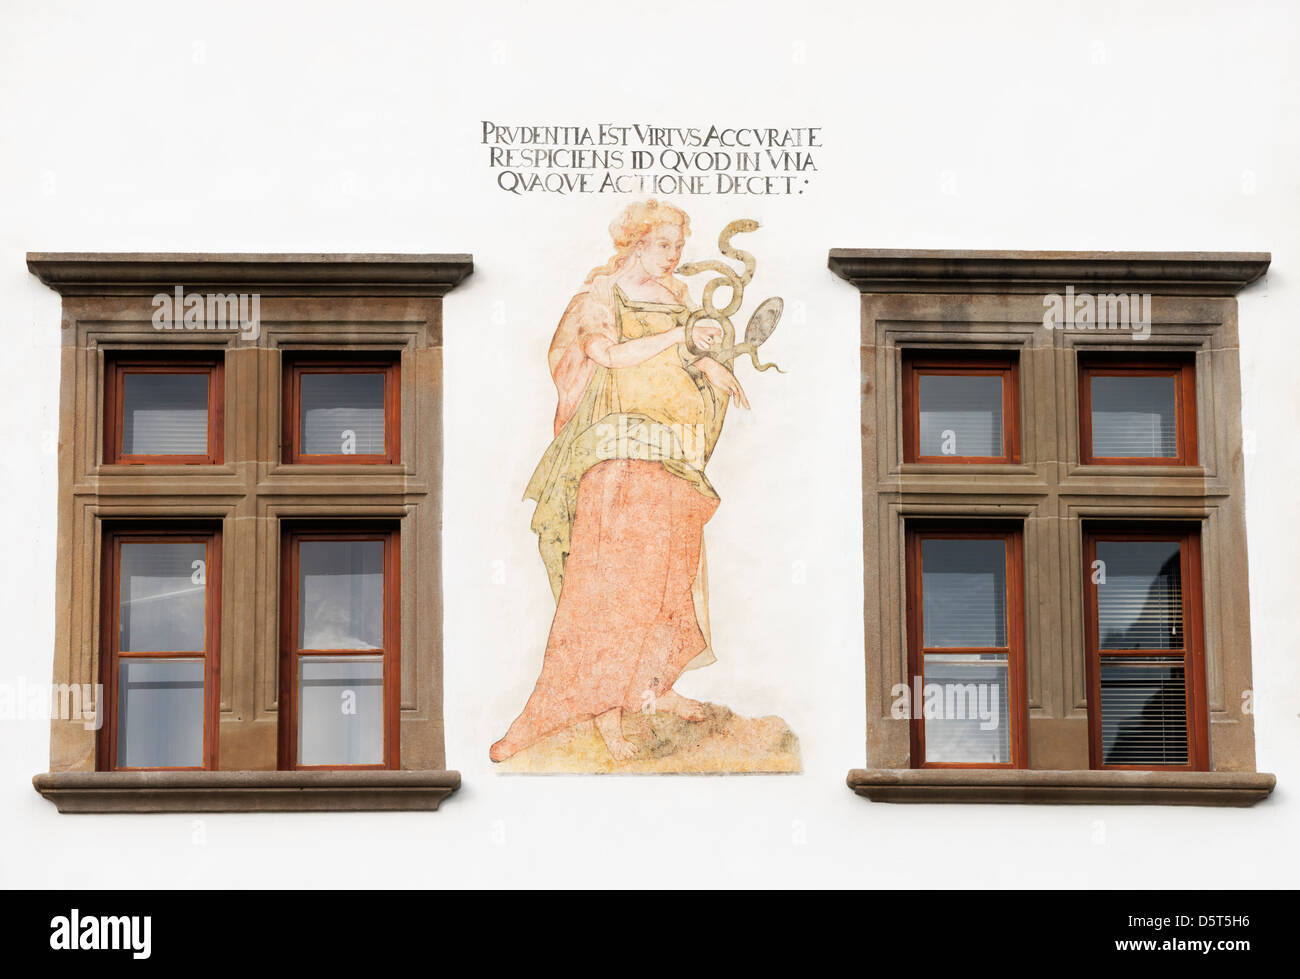 La peinture de la Renaissance à l'Hôtel de ville de Levoca, Slovaquie. Représentant la vertu de prudence ou de discrétion Banque D'Images